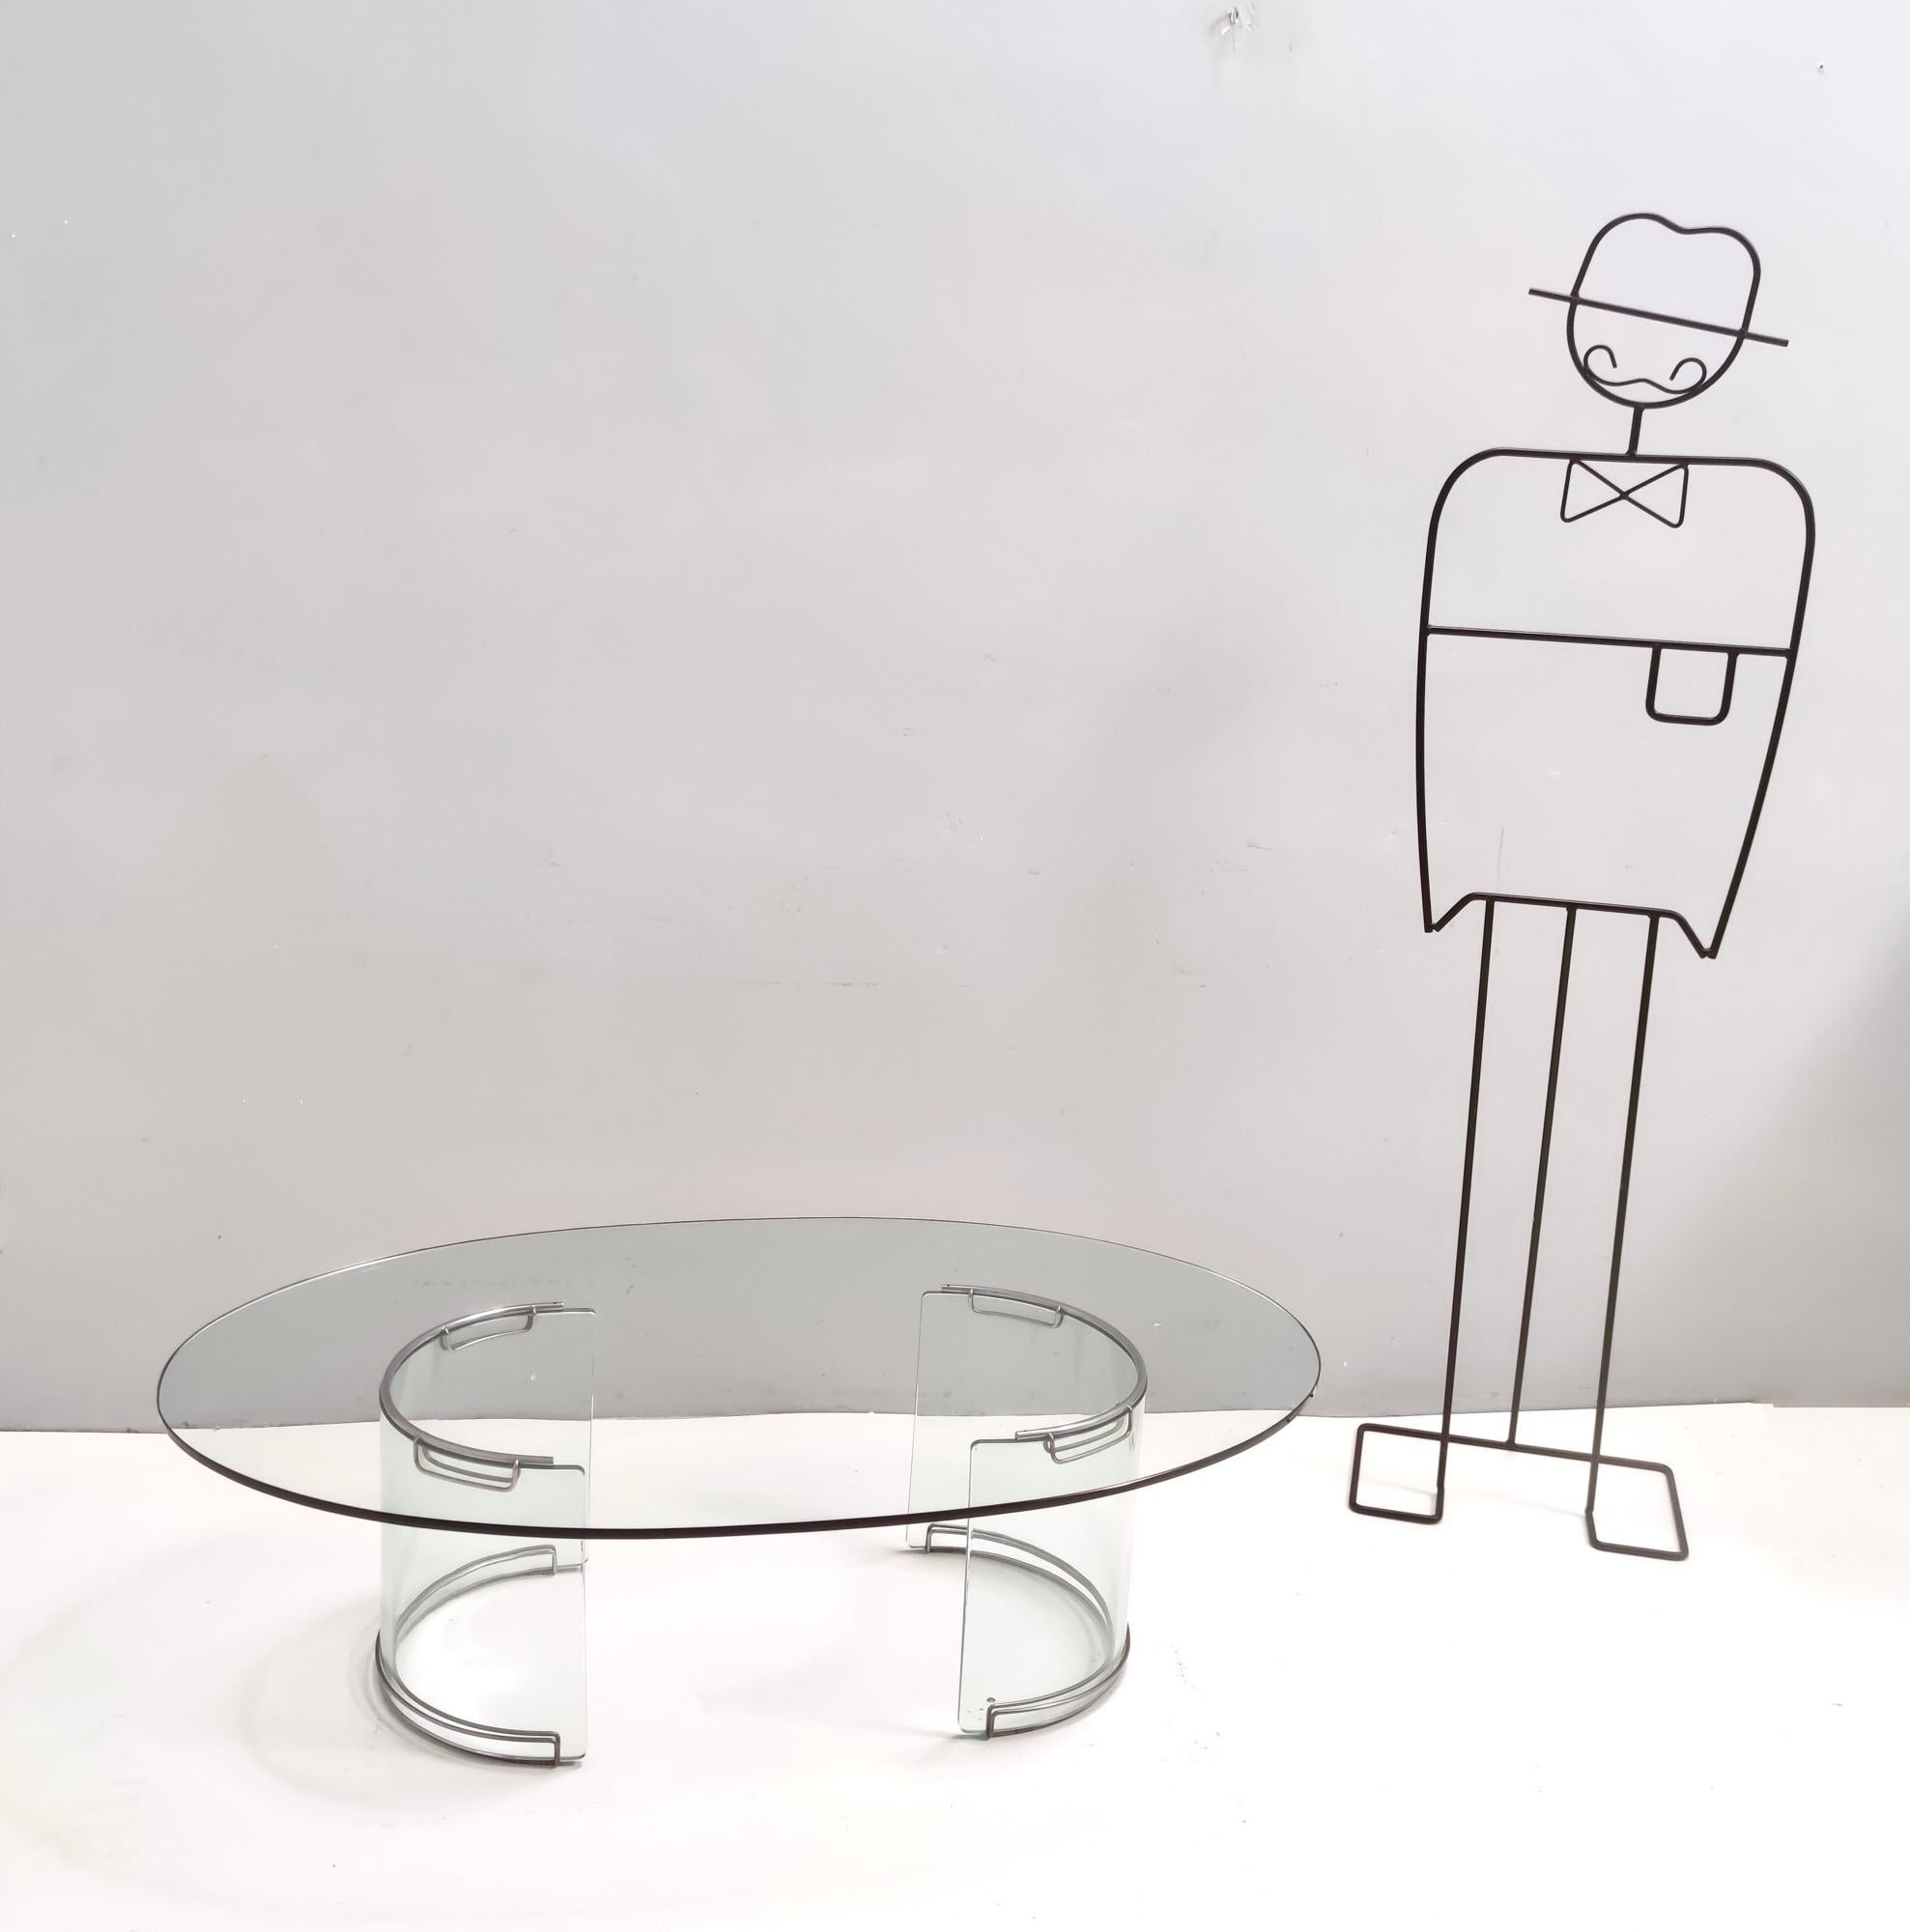 Fabriqué en Italie, années 1970-1980. 
Cette étonnante table basse est fabriquée en verre de 1,2 cm d'épaisseur et comporte des parties en métal chromé.
Il est toujours produit par Gallotti & Radice, mais sans éléments métalliques.
Il s'agit d'une